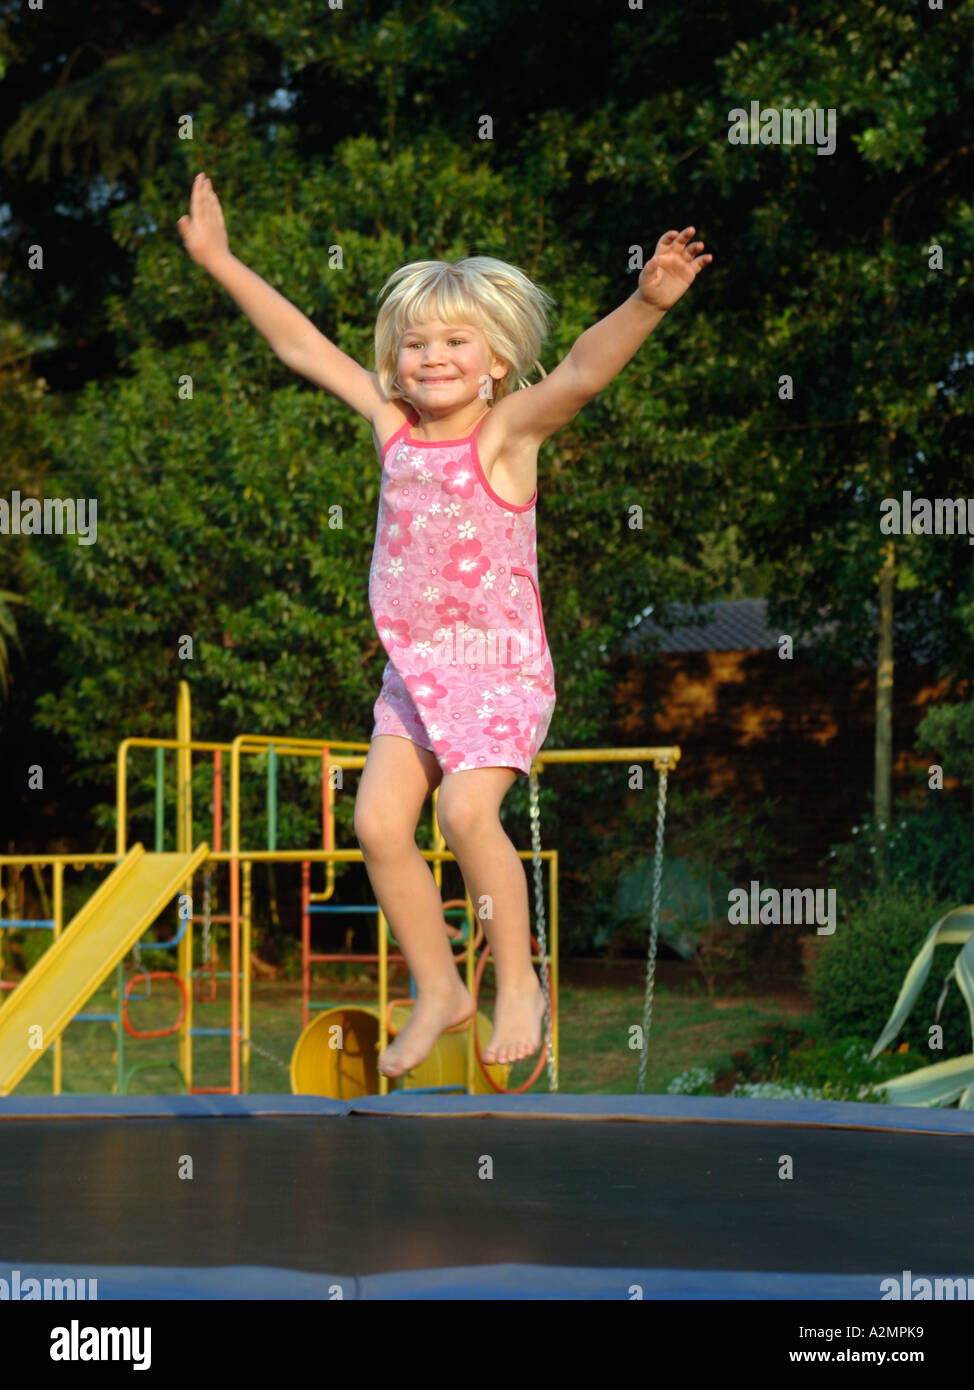 ein 4 - jahre altes mädchen springen auf einem trampolin